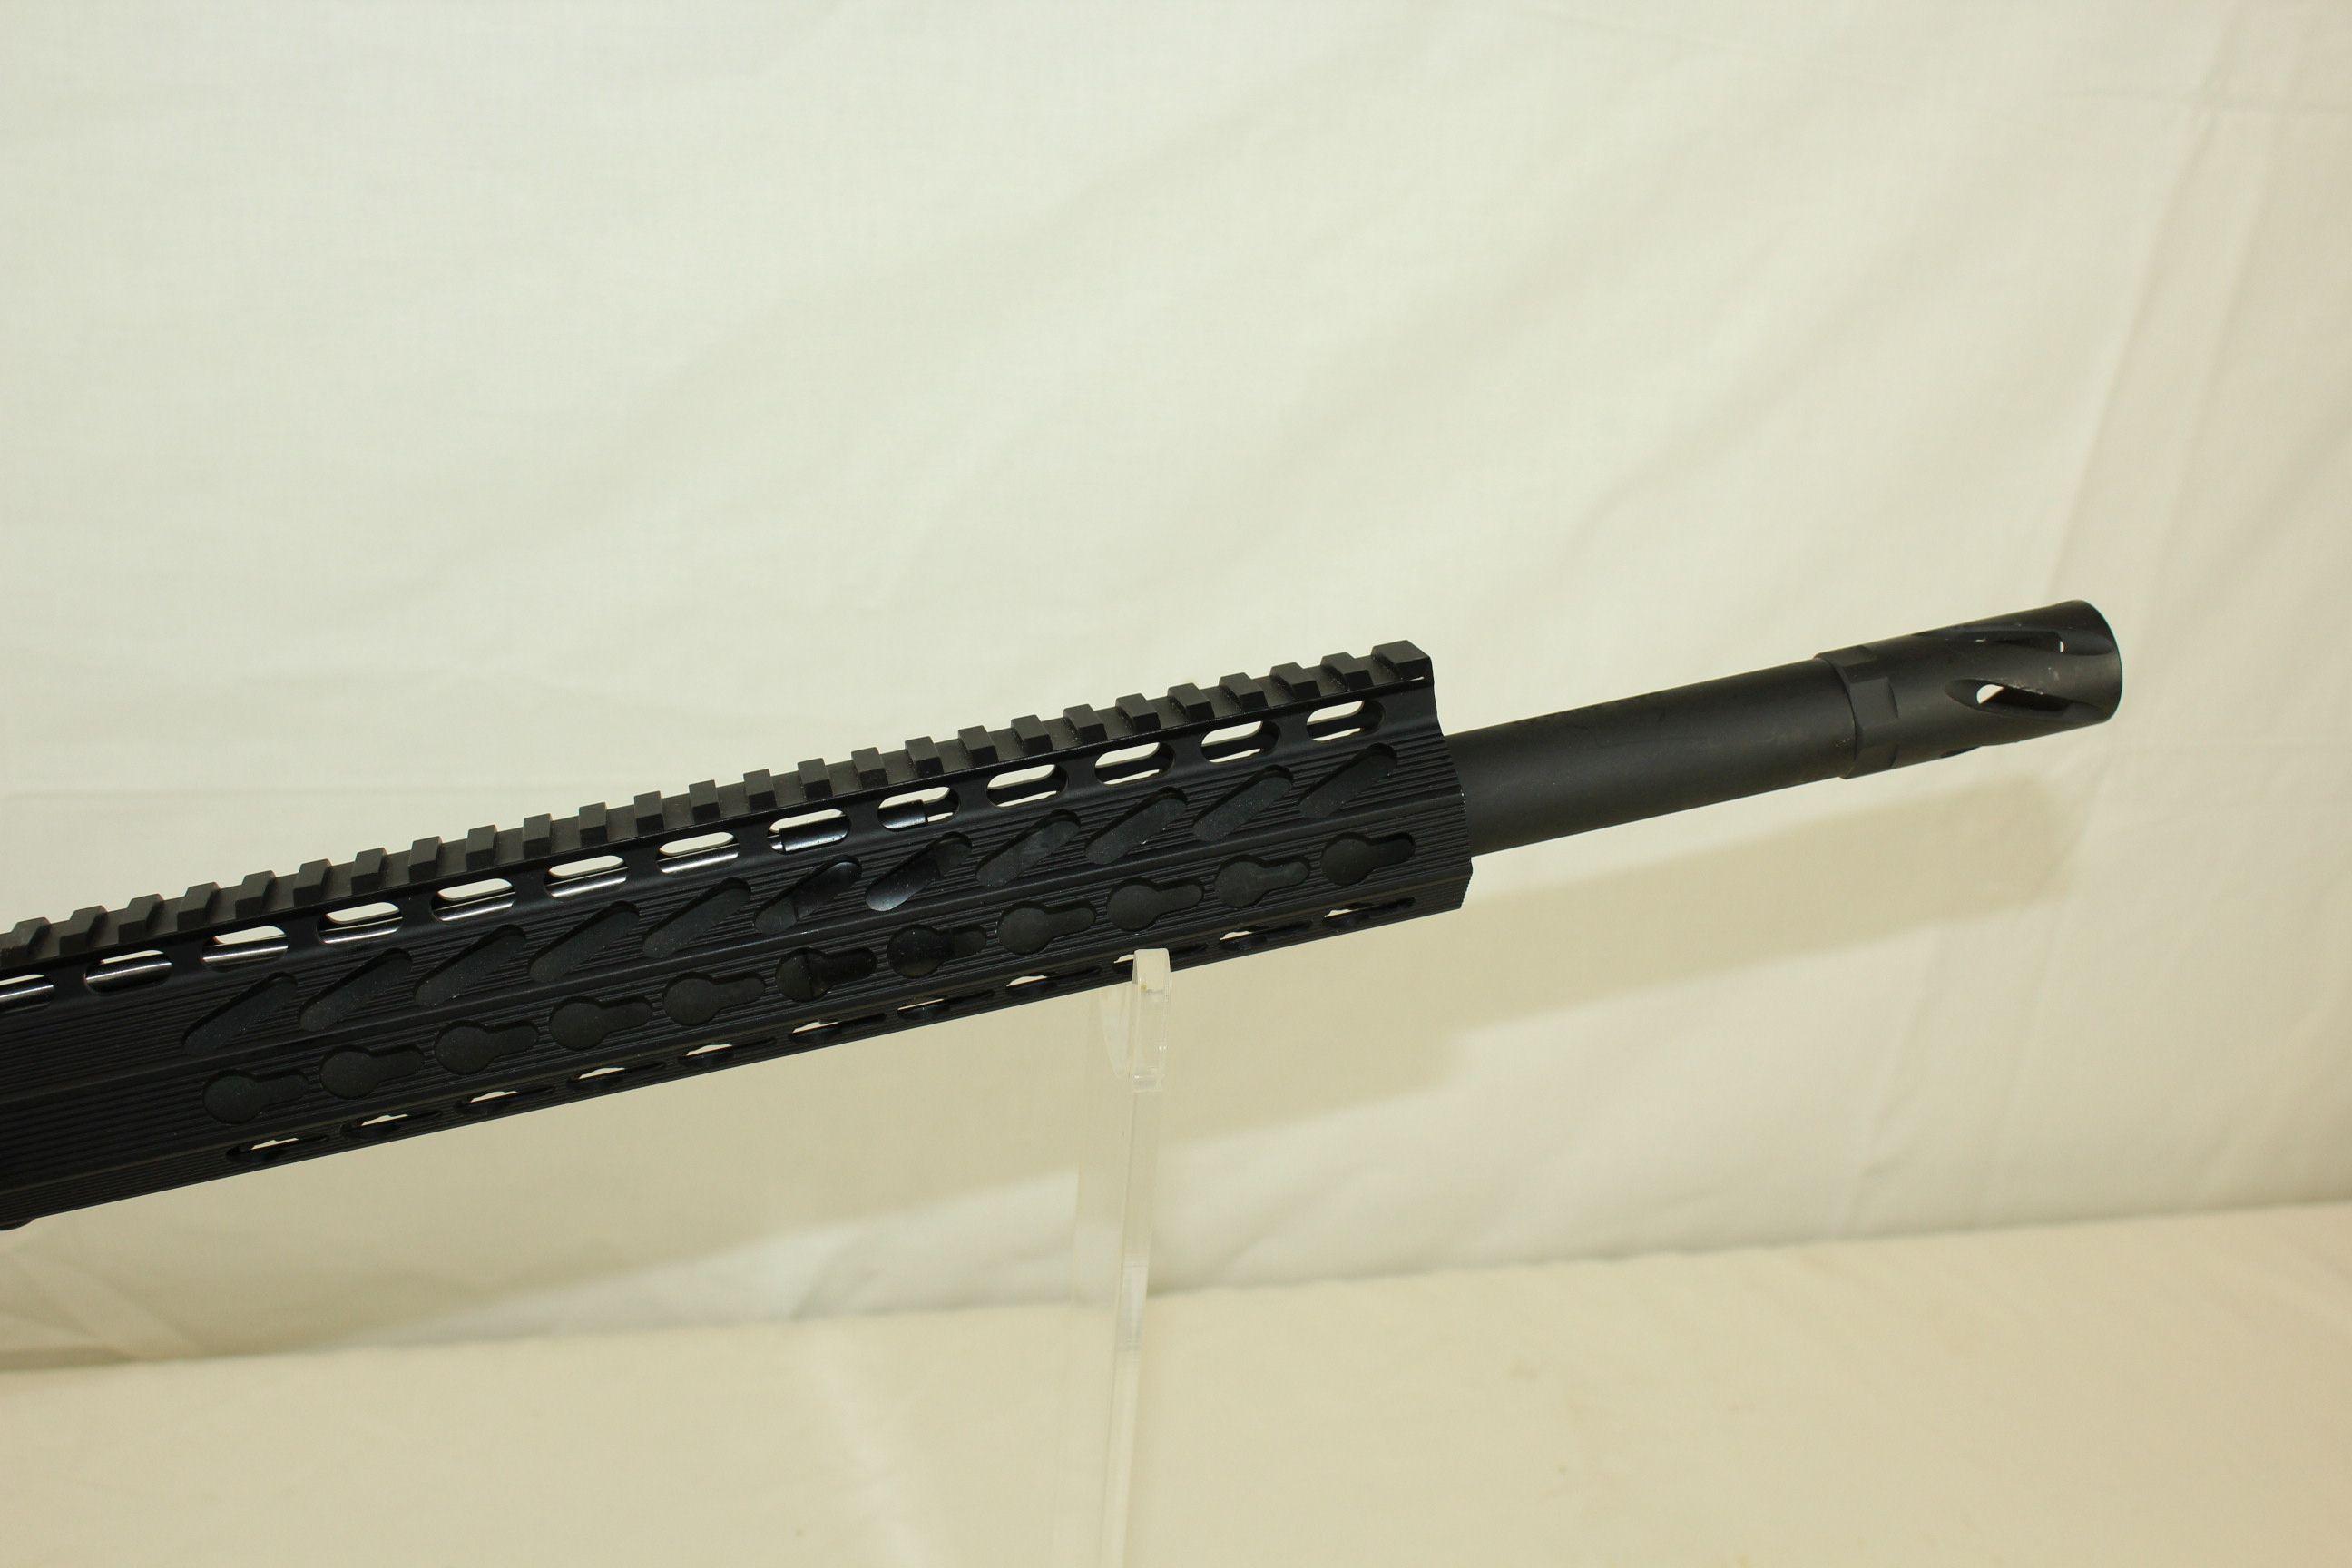 Anderson Mfg. AM-15 .50 Beowulf Semi-Auto Rifle w/Muzzle Brake